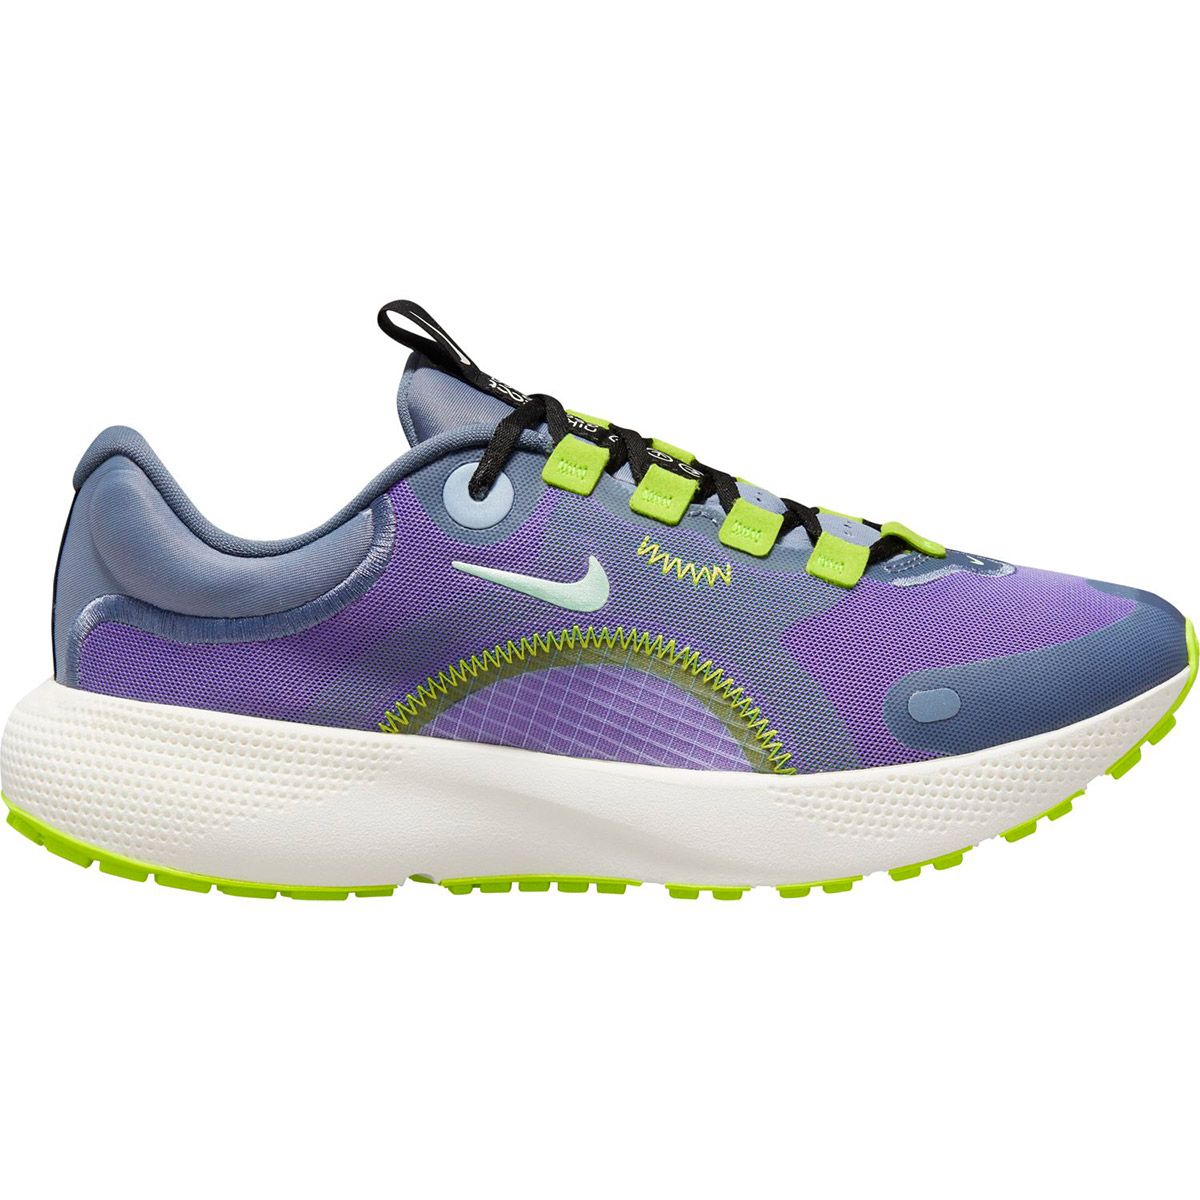 Nike React Escape Run Women's Road Running Shoes CV3817-400